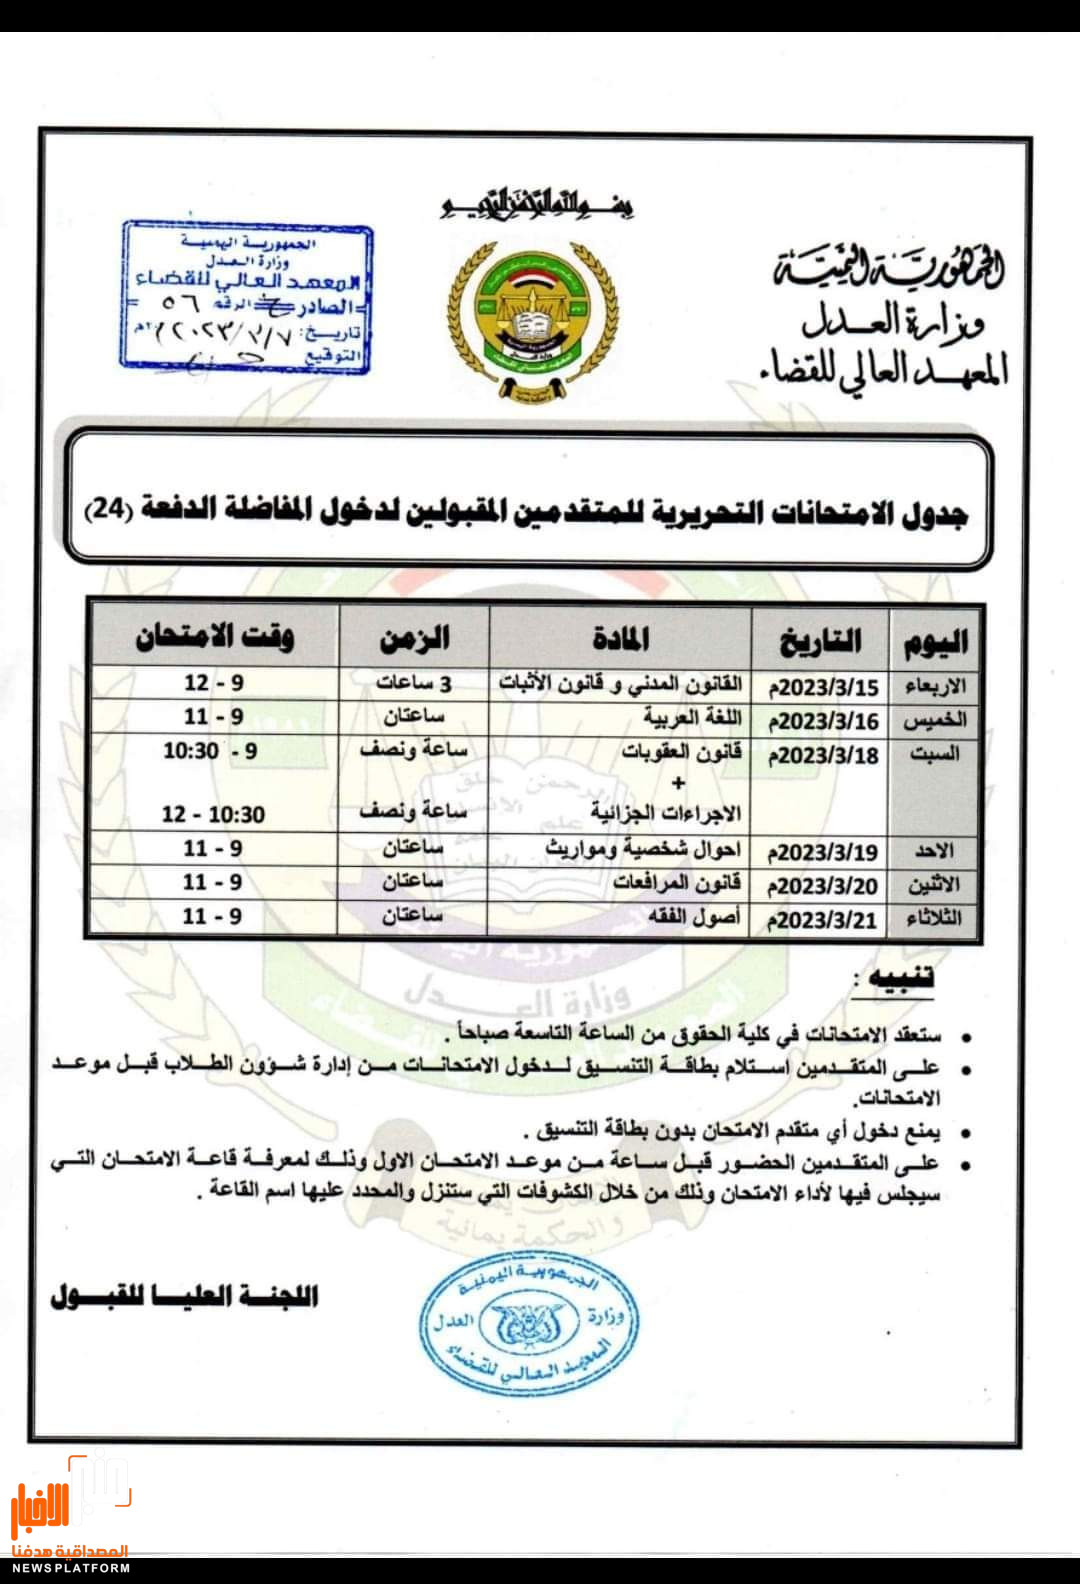 اعلان جدول الإمتحانات التحريرية للمتقدمين للالتحاق بالدفعة (24) بمعهد القضاء